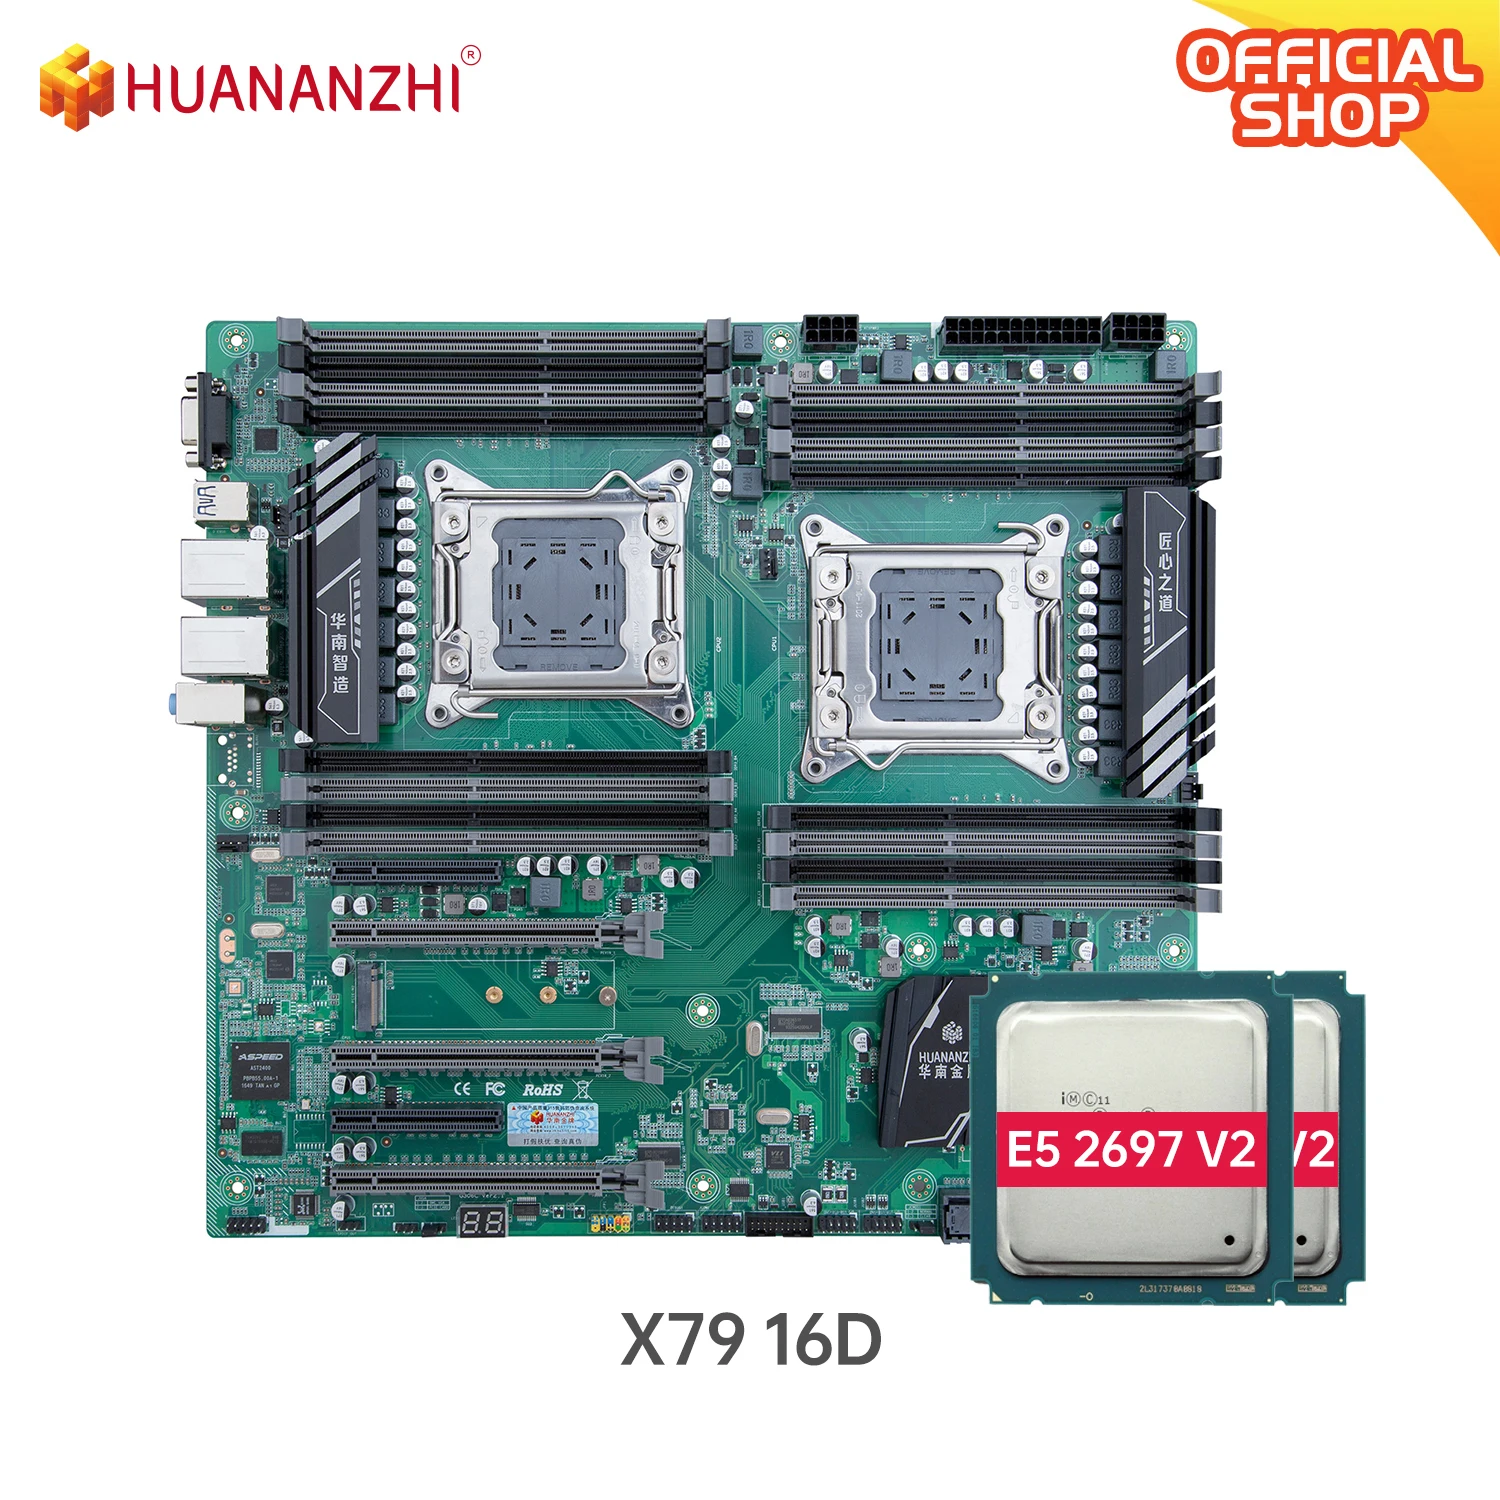 Двойная материнская плата HUANANZHI X79 16D с Intel XEON E5 2697V2*2 комбинированная память